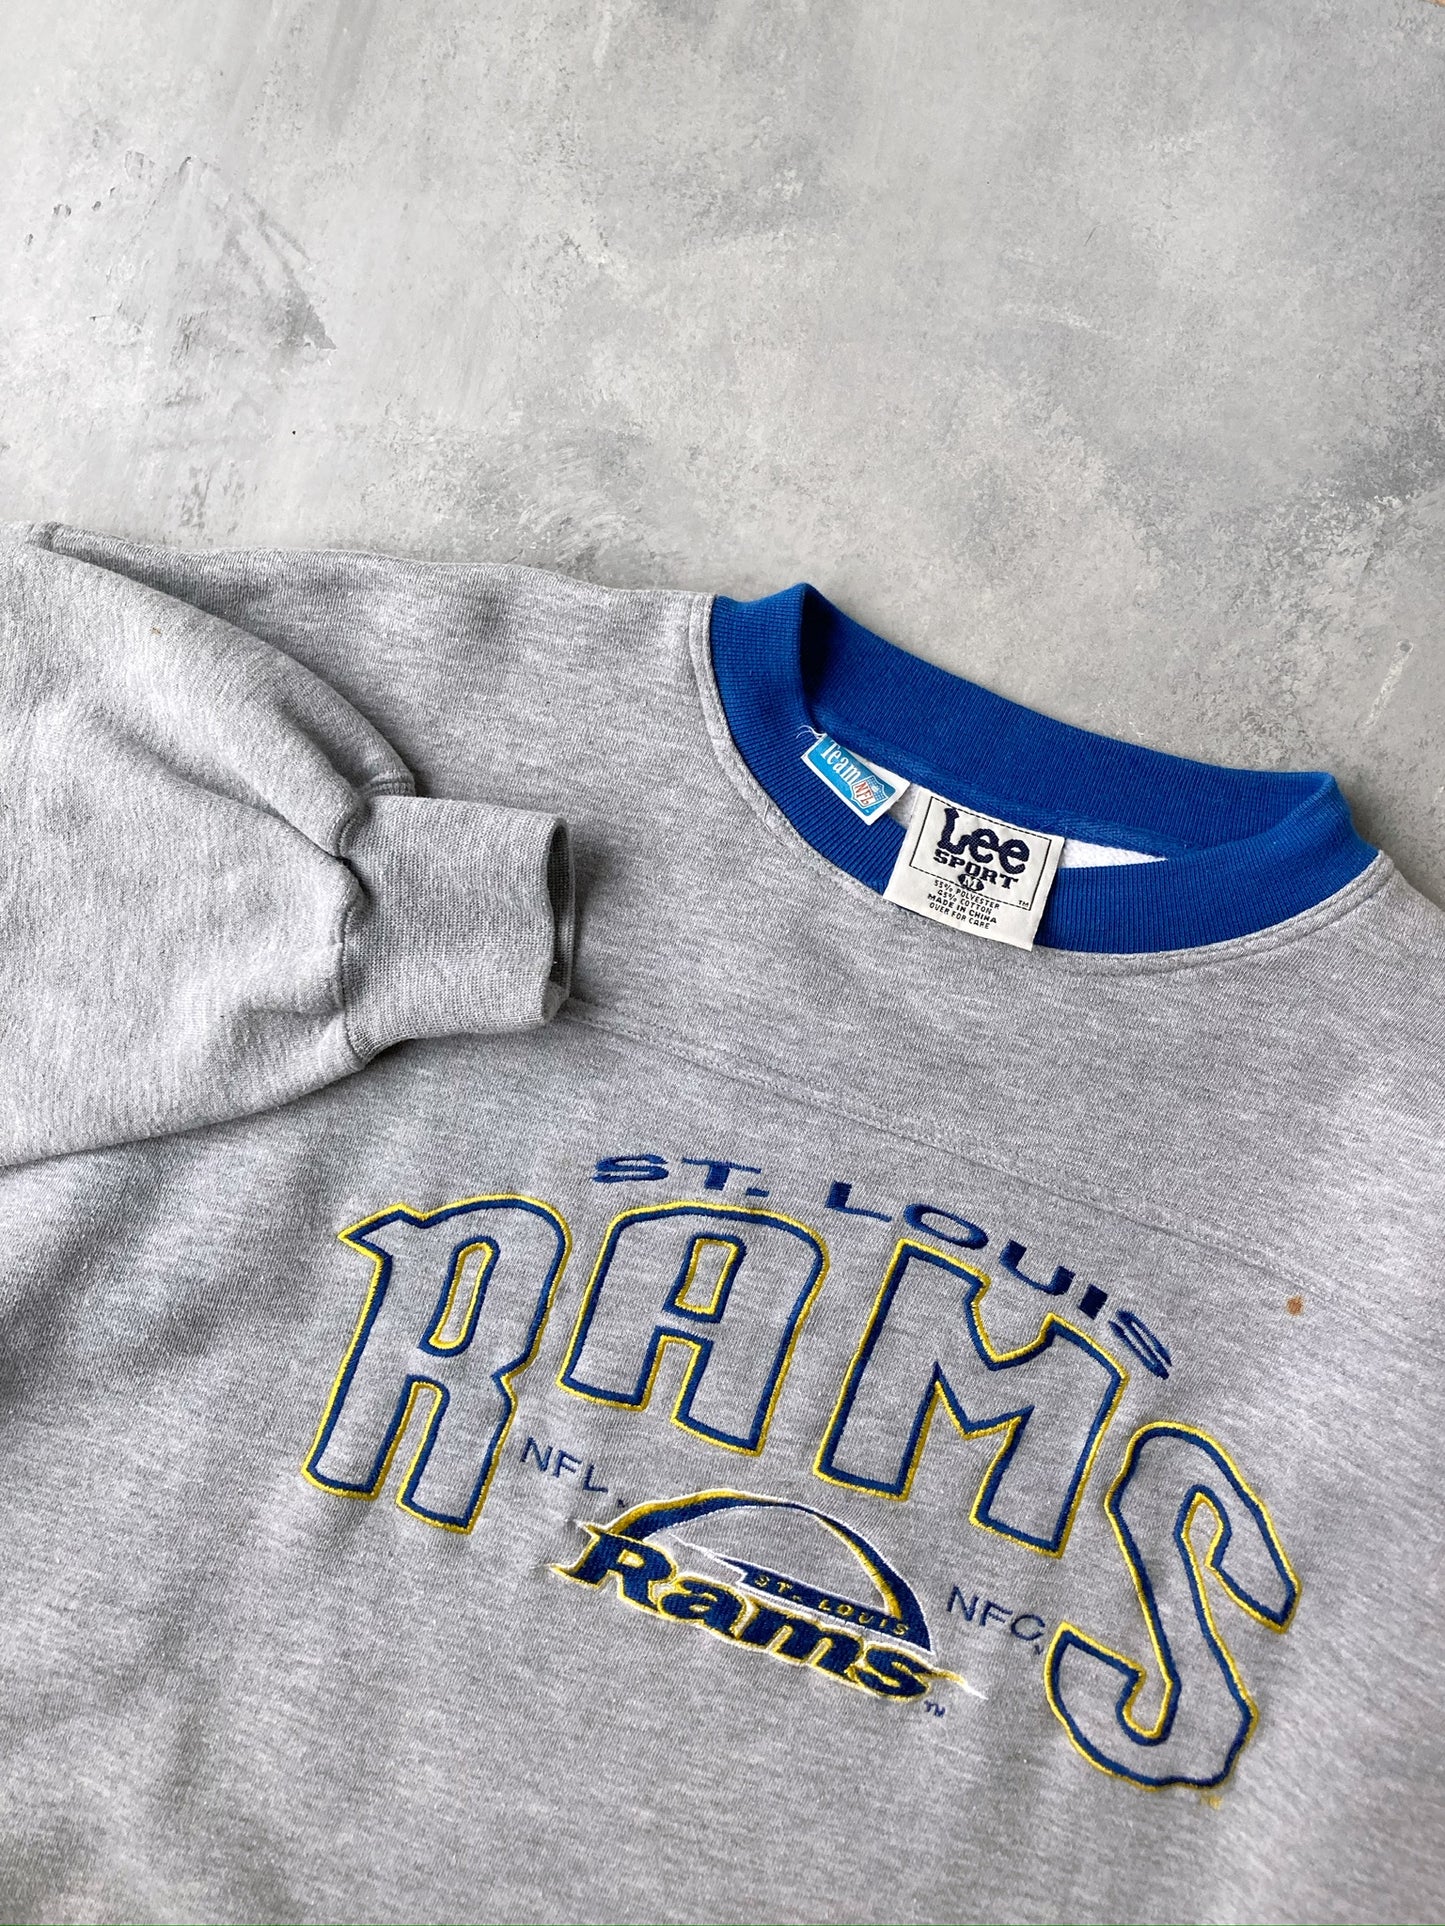 St. Louis Rams Sweatshirt 90's - XL